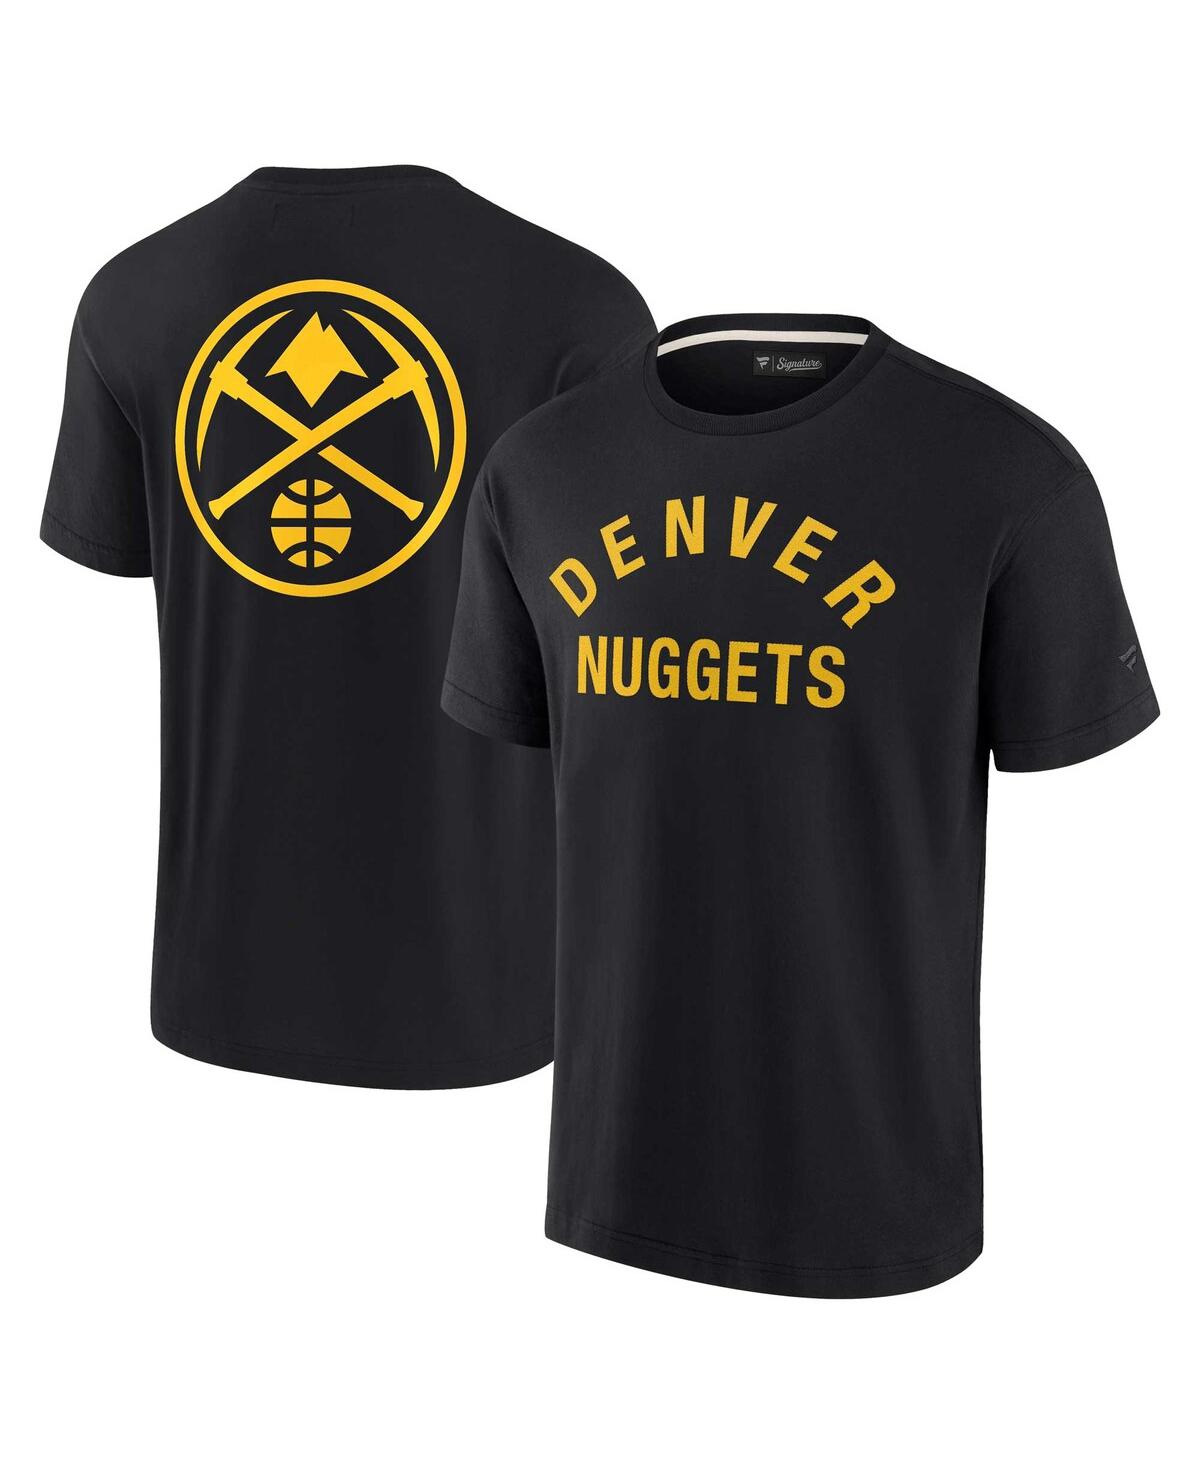 Fanatics Signature Men's And Women's  Black Denver Nuggets Super Soft T-shirt